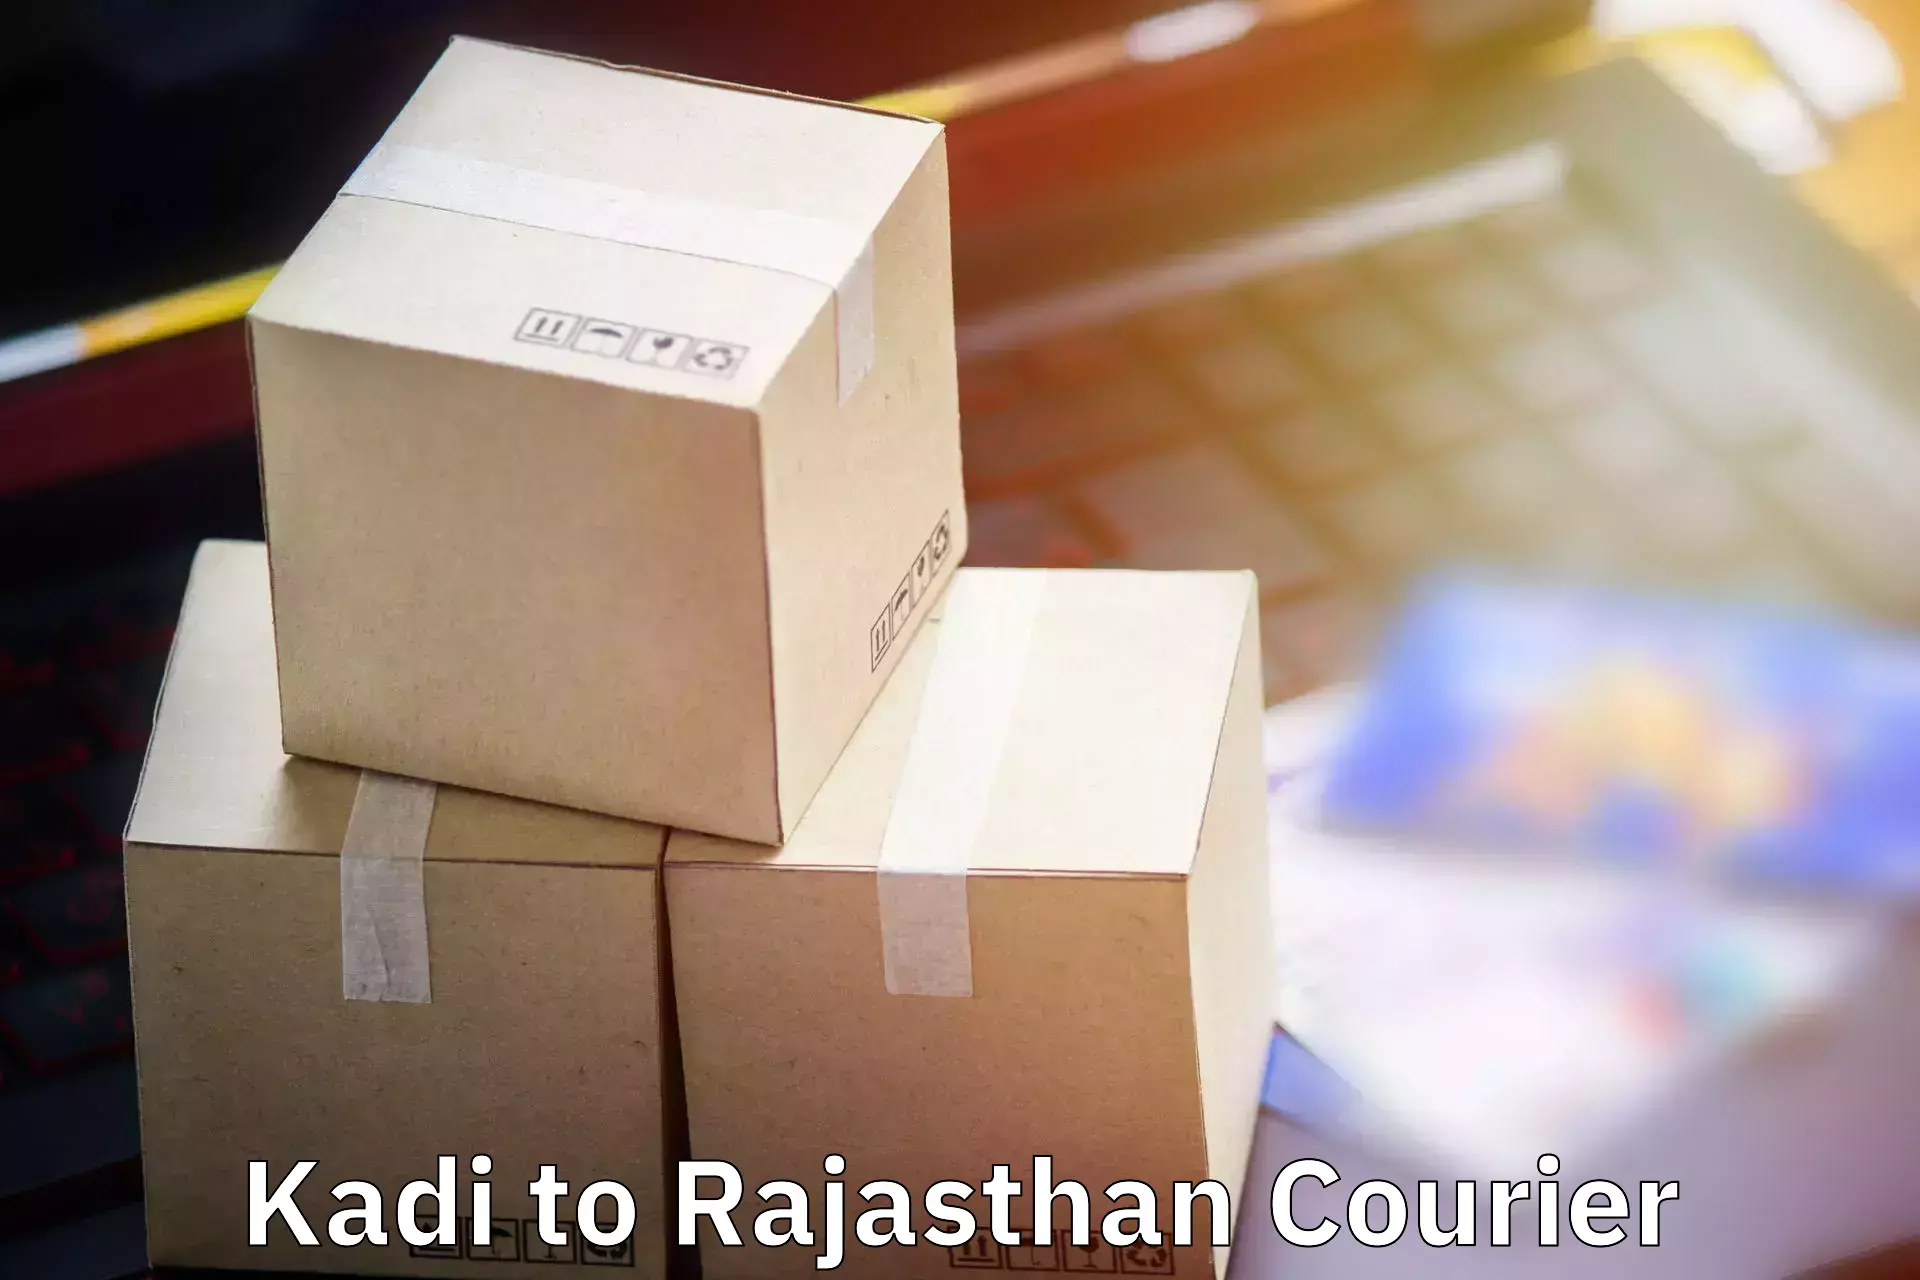 Baggage transport coordination Kadi to Rajasthan